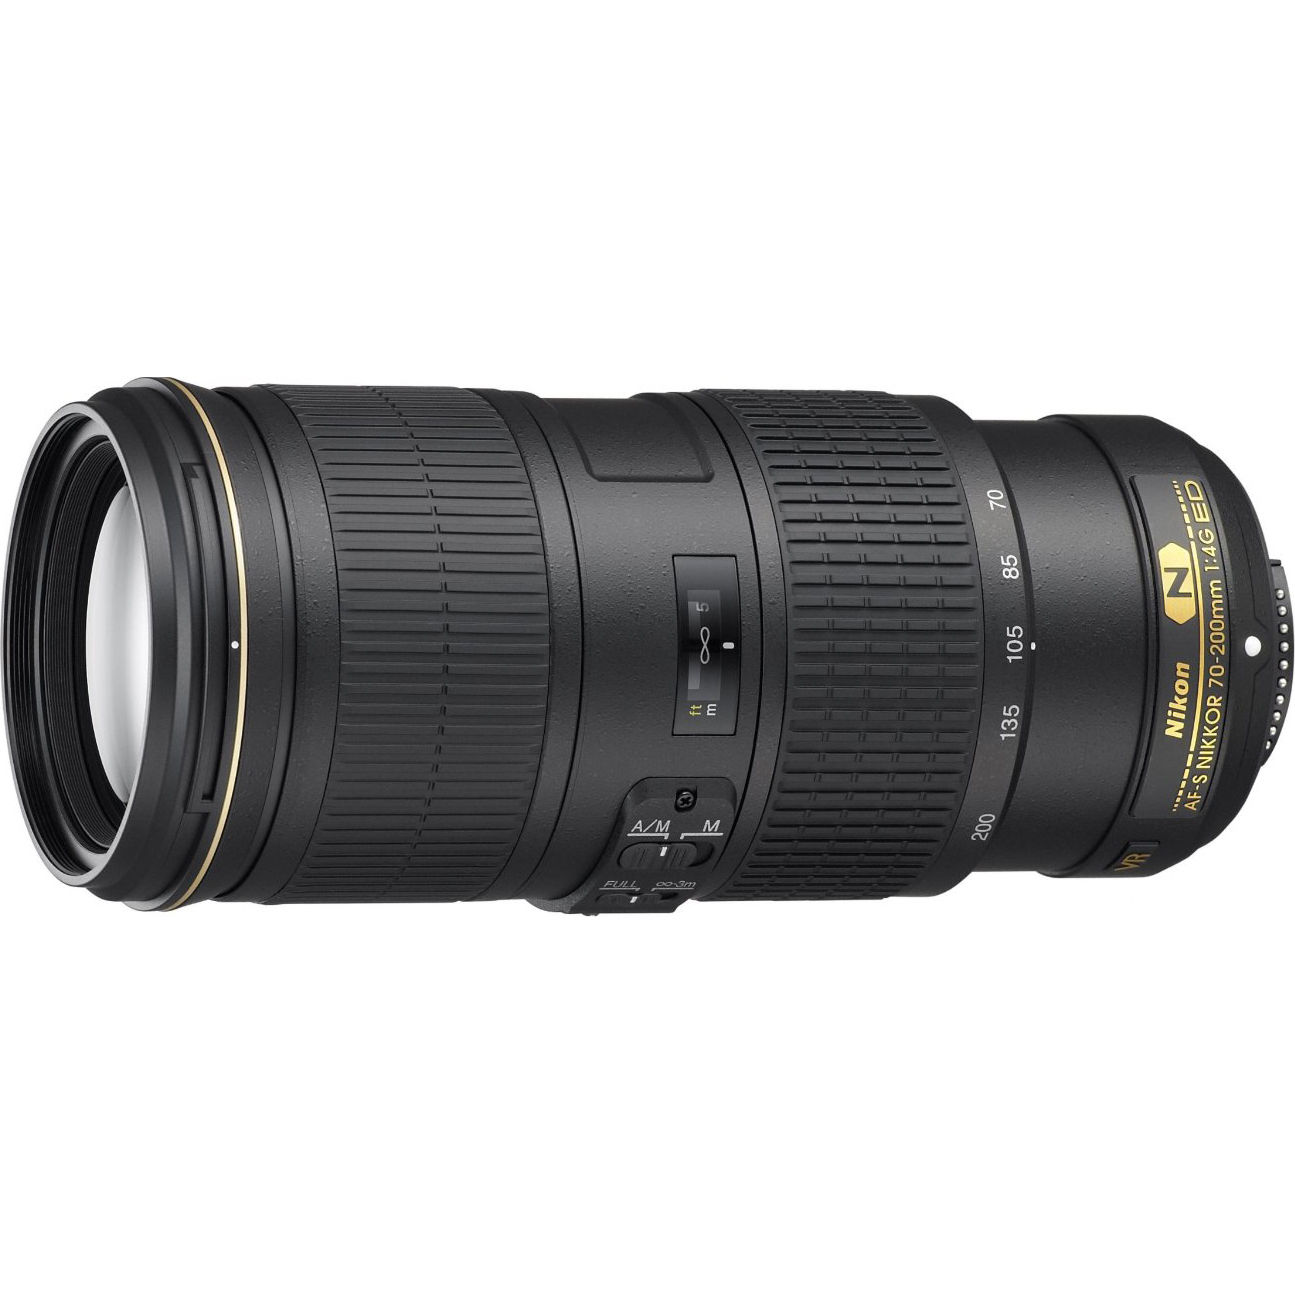 Hot Deal – Refurbished AF-S NIKKROR 70-200mm f/4G ED VR Lens for $949 !